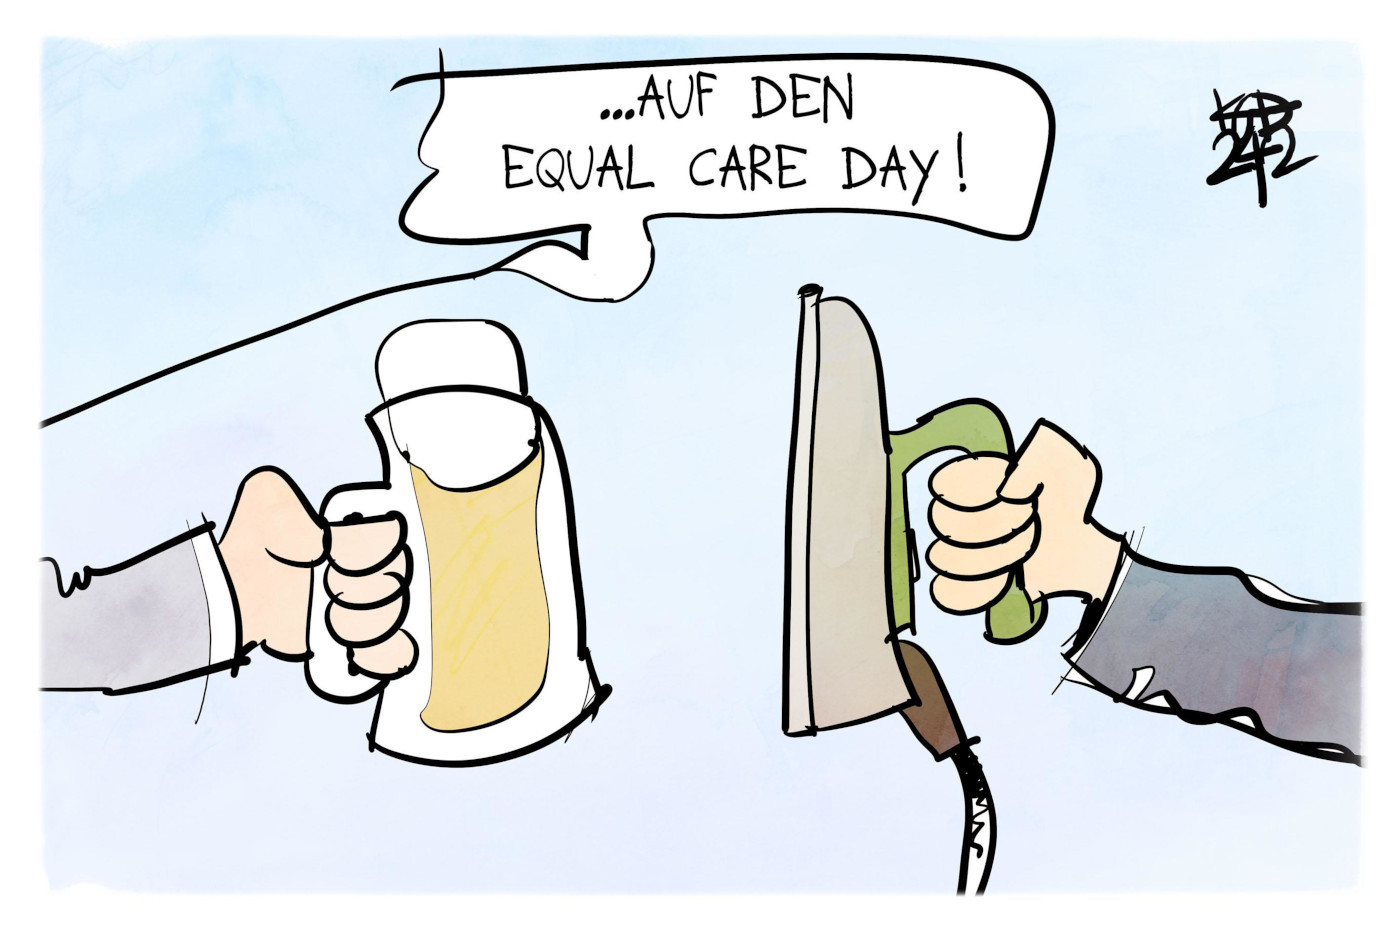 Die Karikatur "Equal Care Day" von Kostas Koufogiorgos. Sie zeigt zwei Hände, die zum Prosten zusammengeführt werden: Die Han,d die von der linken Seite ins Bild kommt, hält einen Bierkrug. Die Hand, die von der rechten Seite ins Bild kommt, hält ein Bügeleisen. Darüber steht in einer Sprechblase: "Auf den Equal Care Day!" 